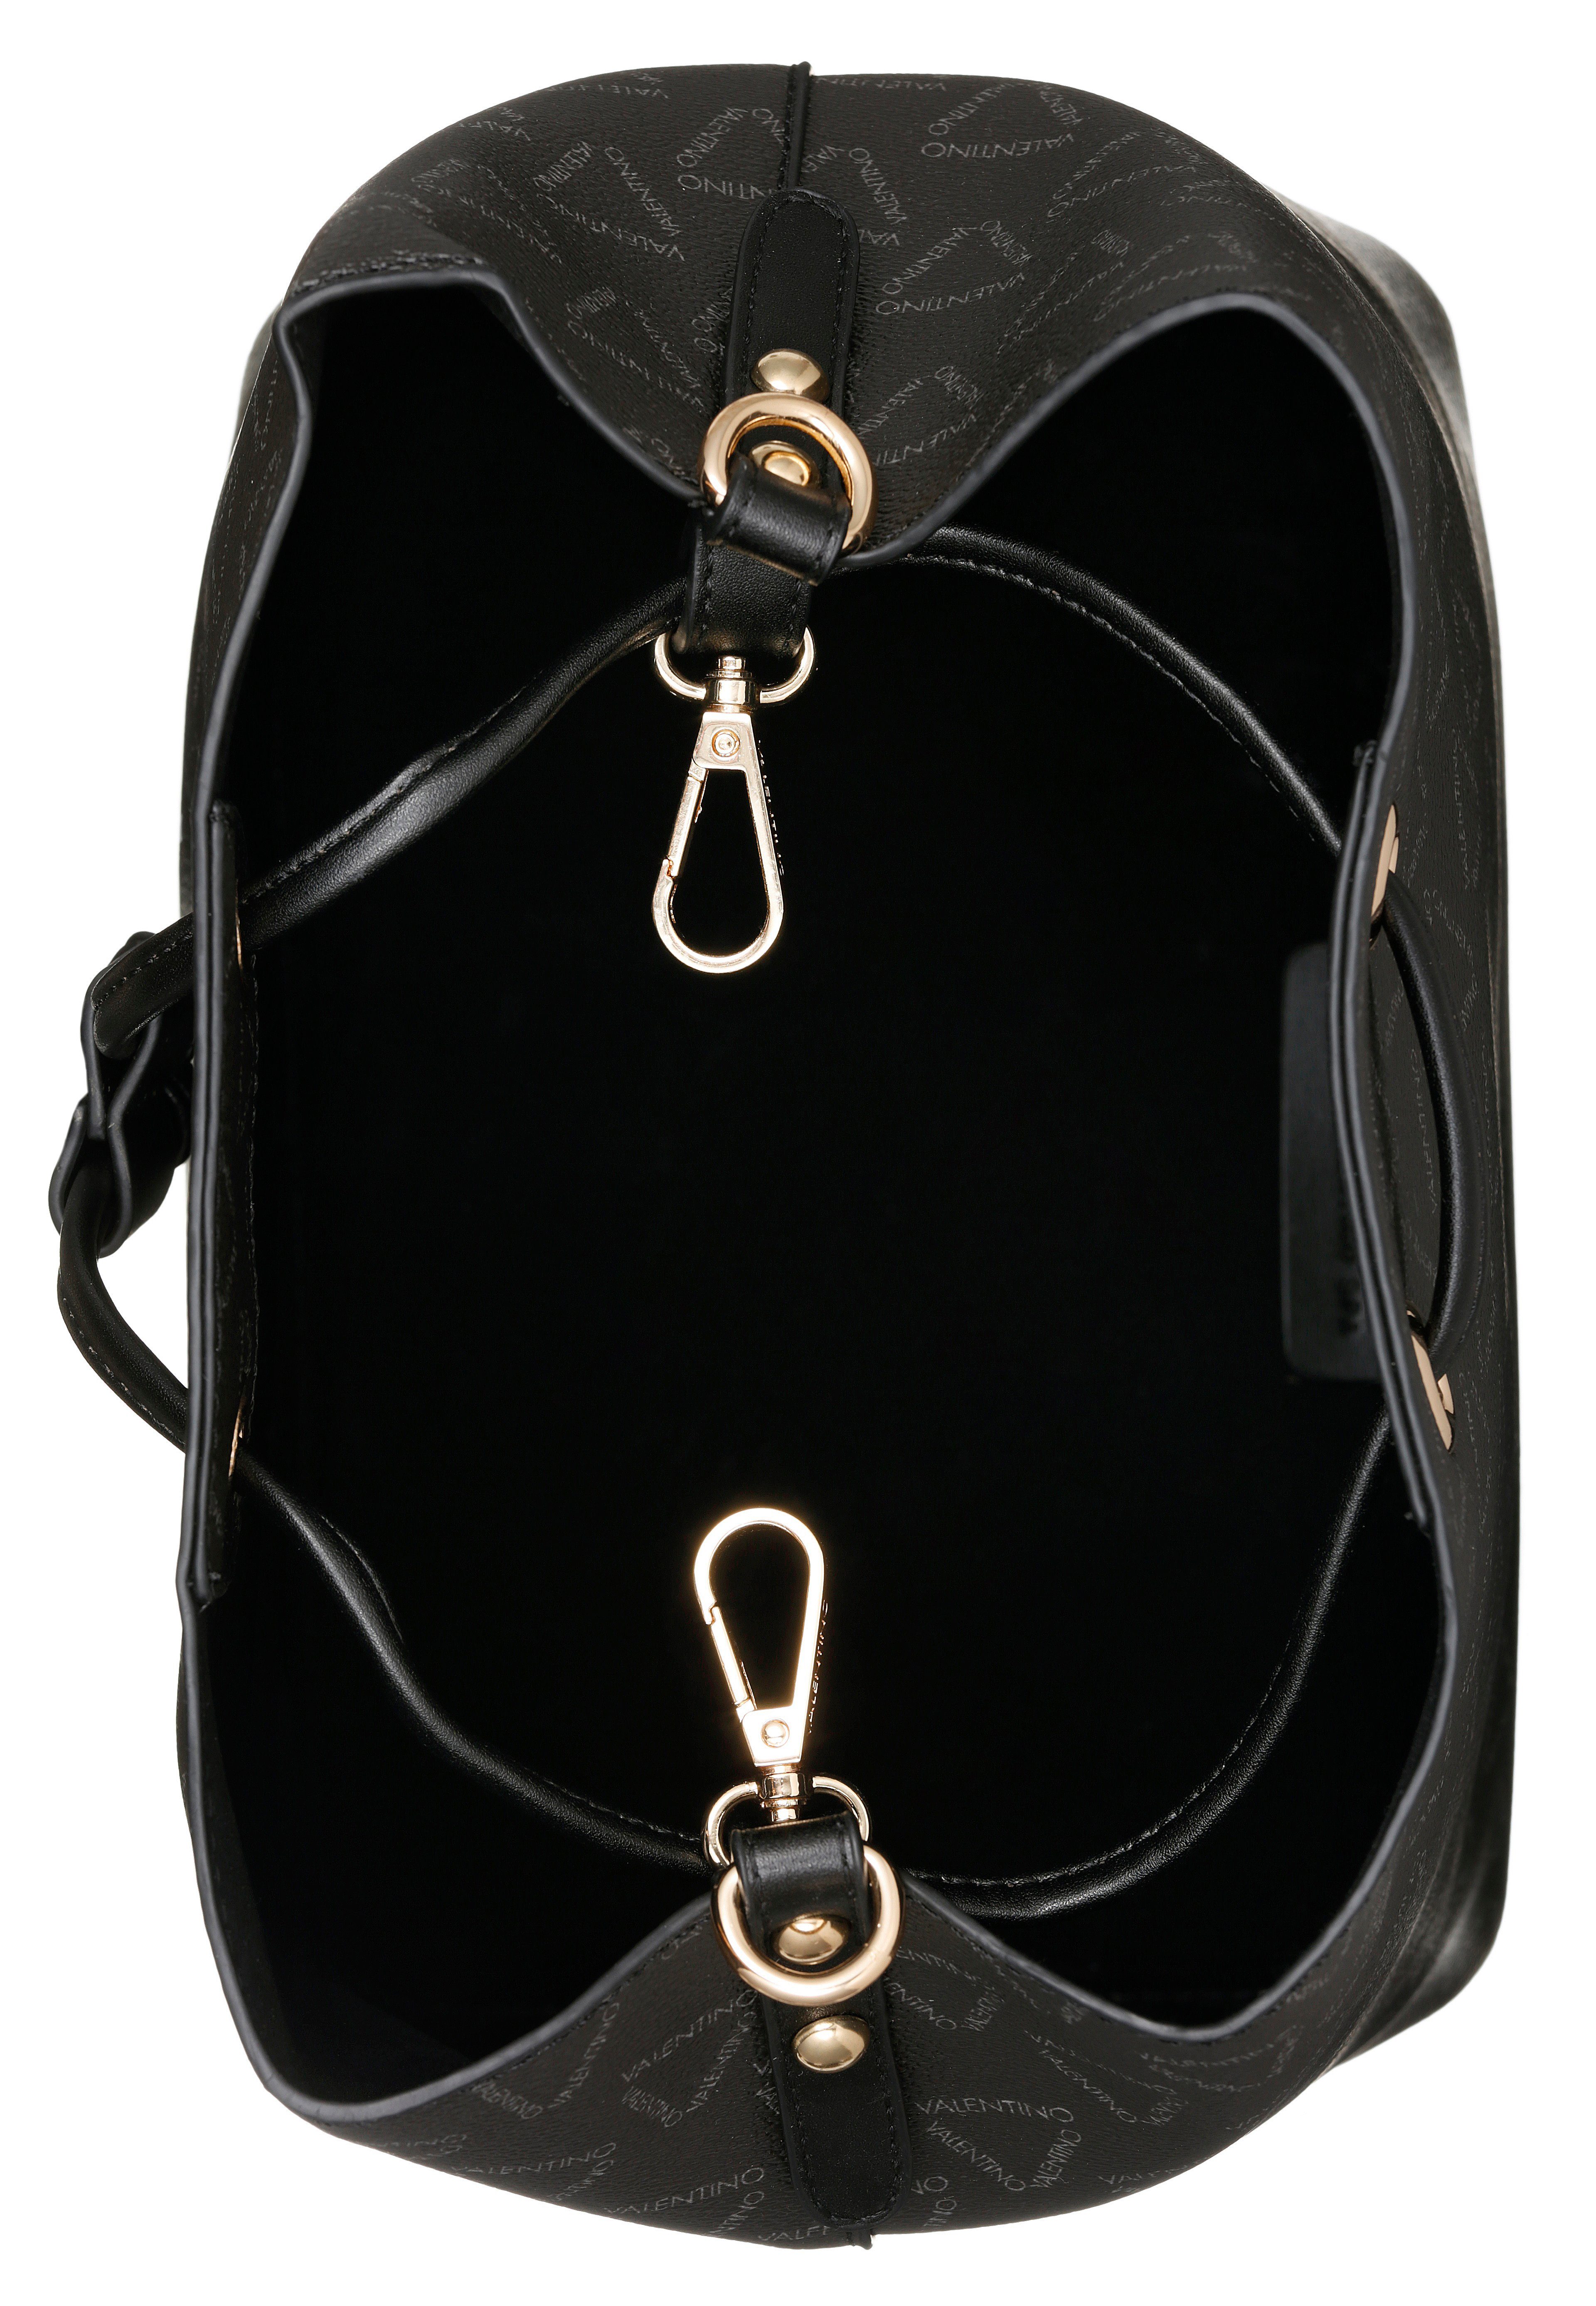 Beuteltasche herausnehbarer BAGS mit VALENTINO Reißverschluss-Innentasche LIUTO, schwarz